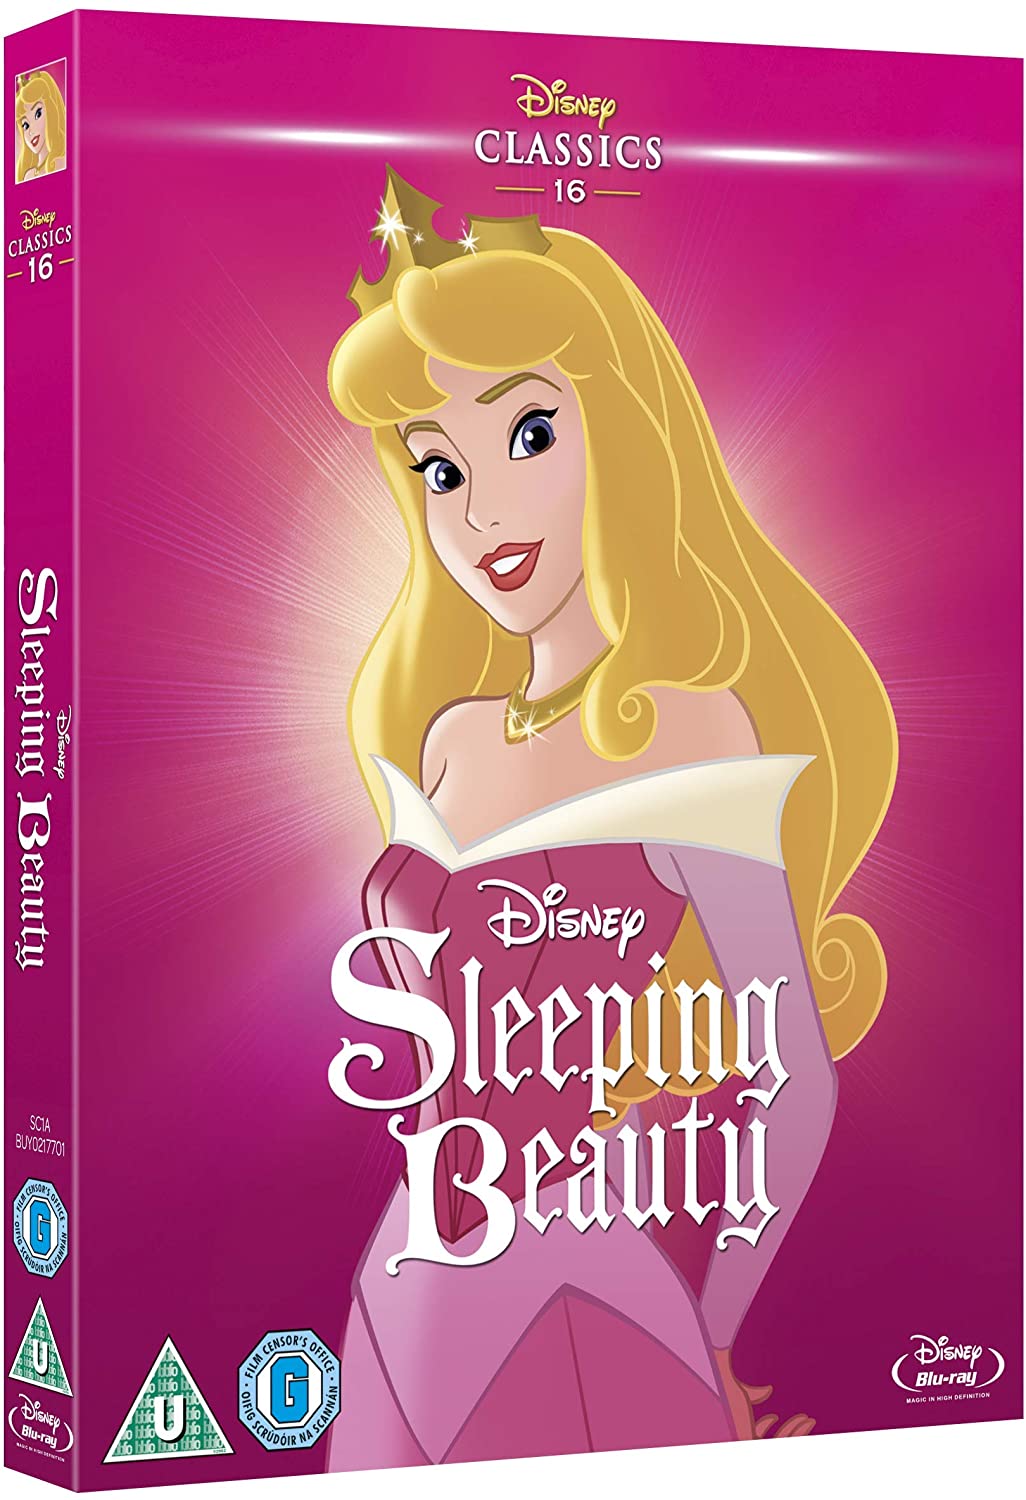 La bella addormentata [Blu-ray]